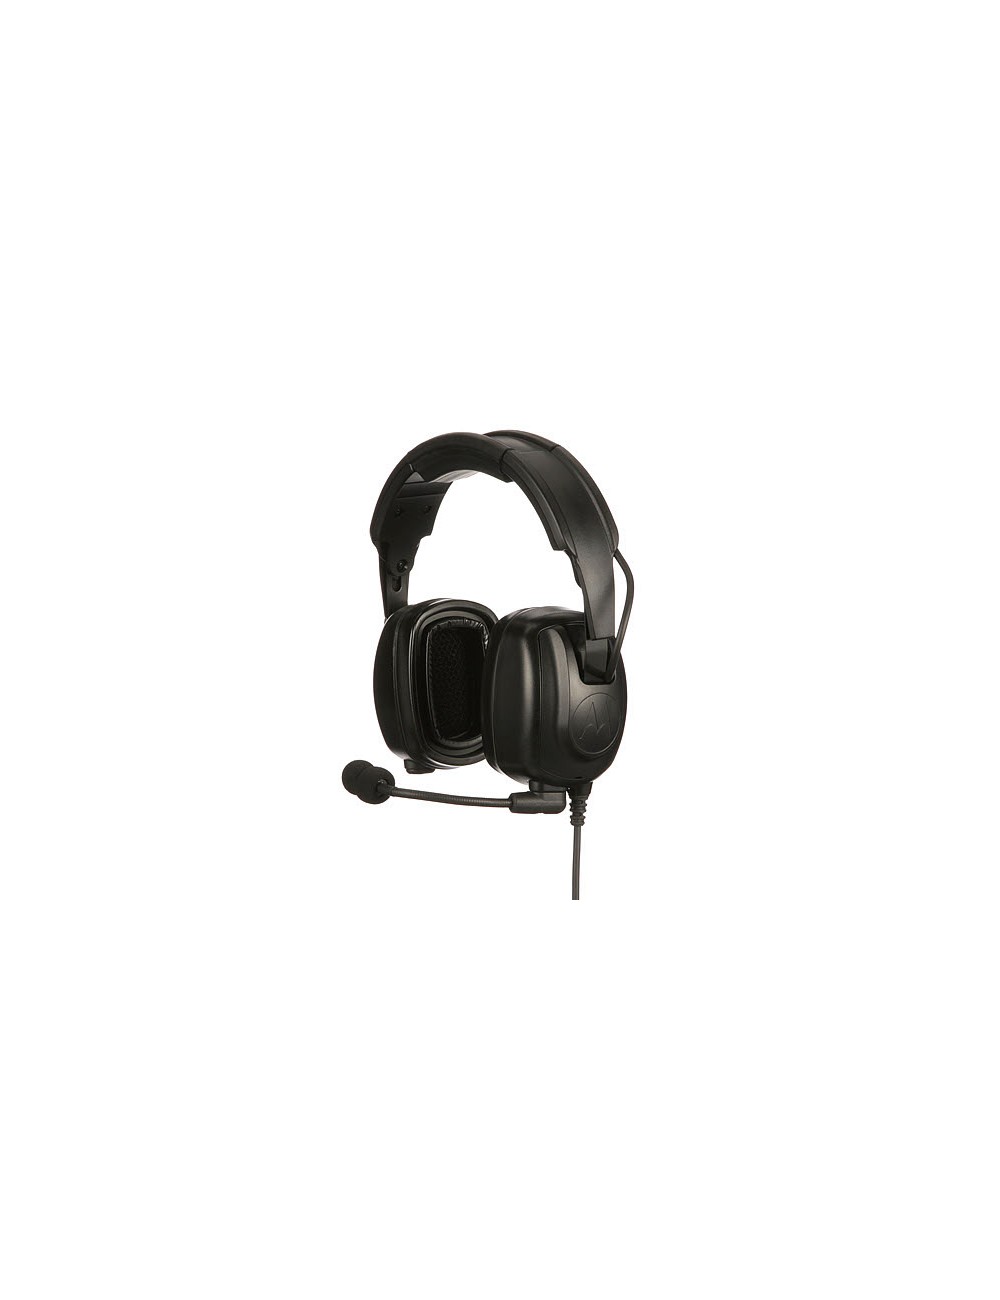 Heavy duty headset PMLN7464A